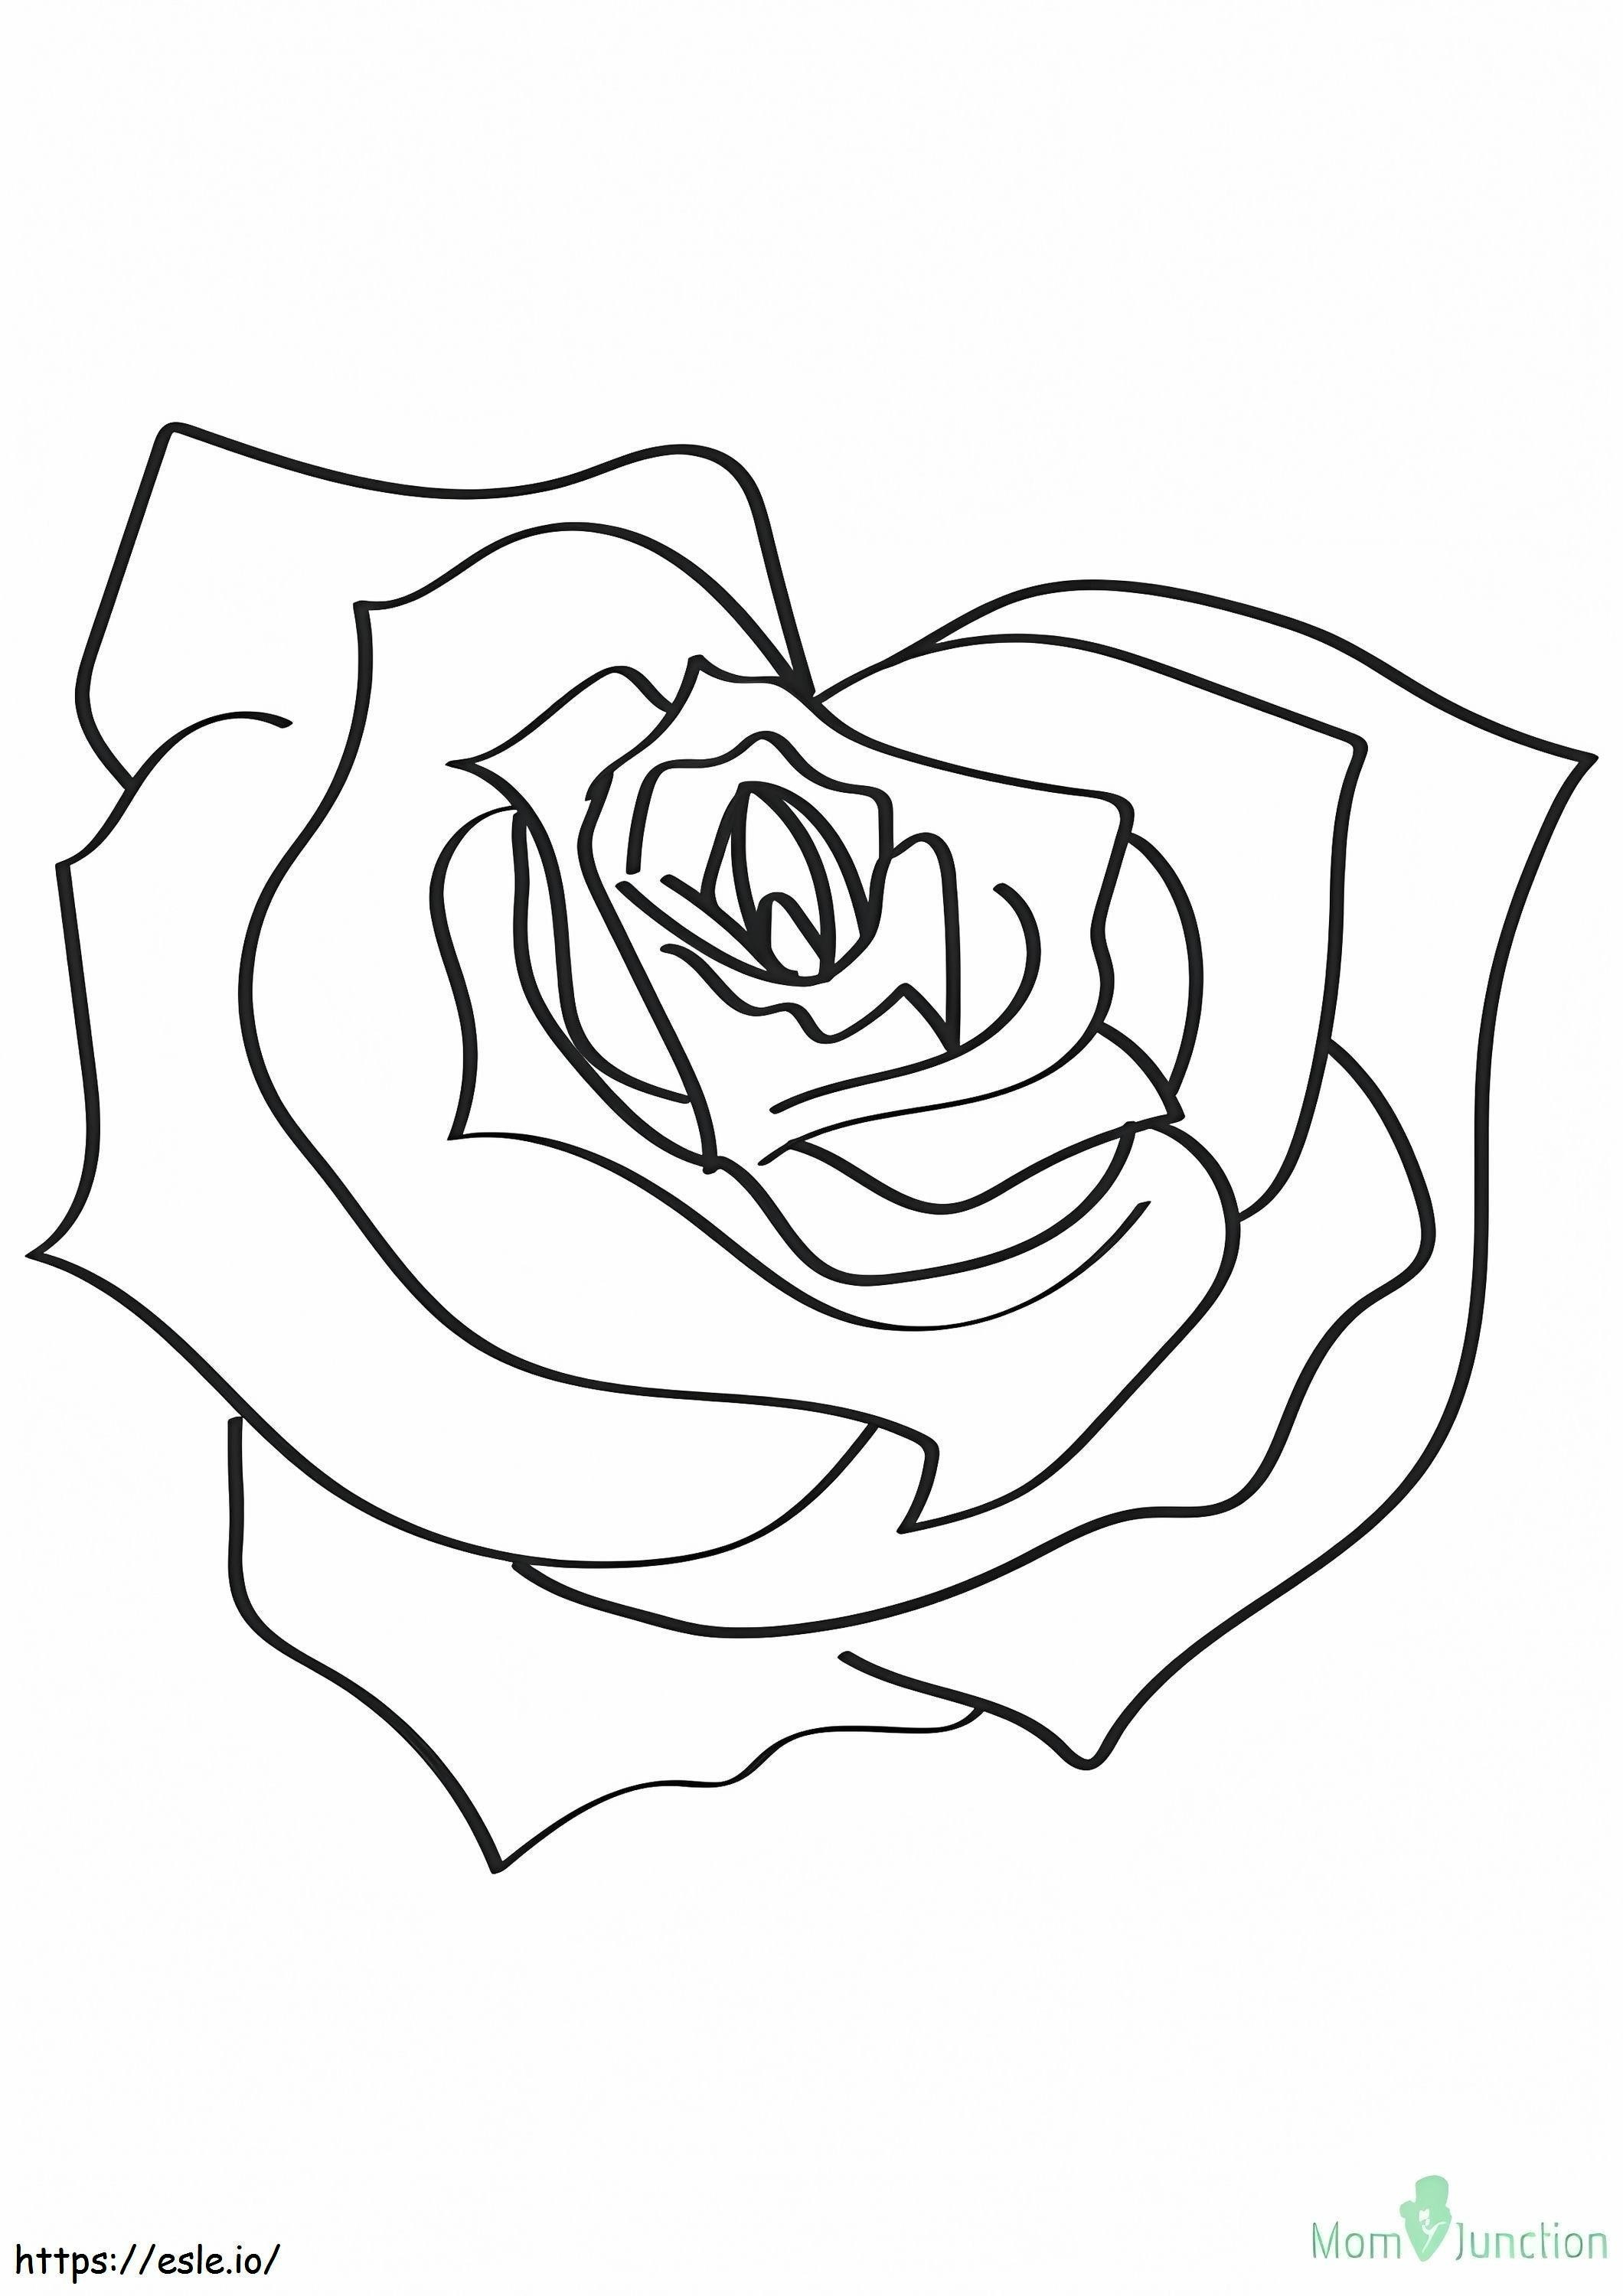 1526201737 La Rosa En Forma De Corazón 16 A4 para colorear